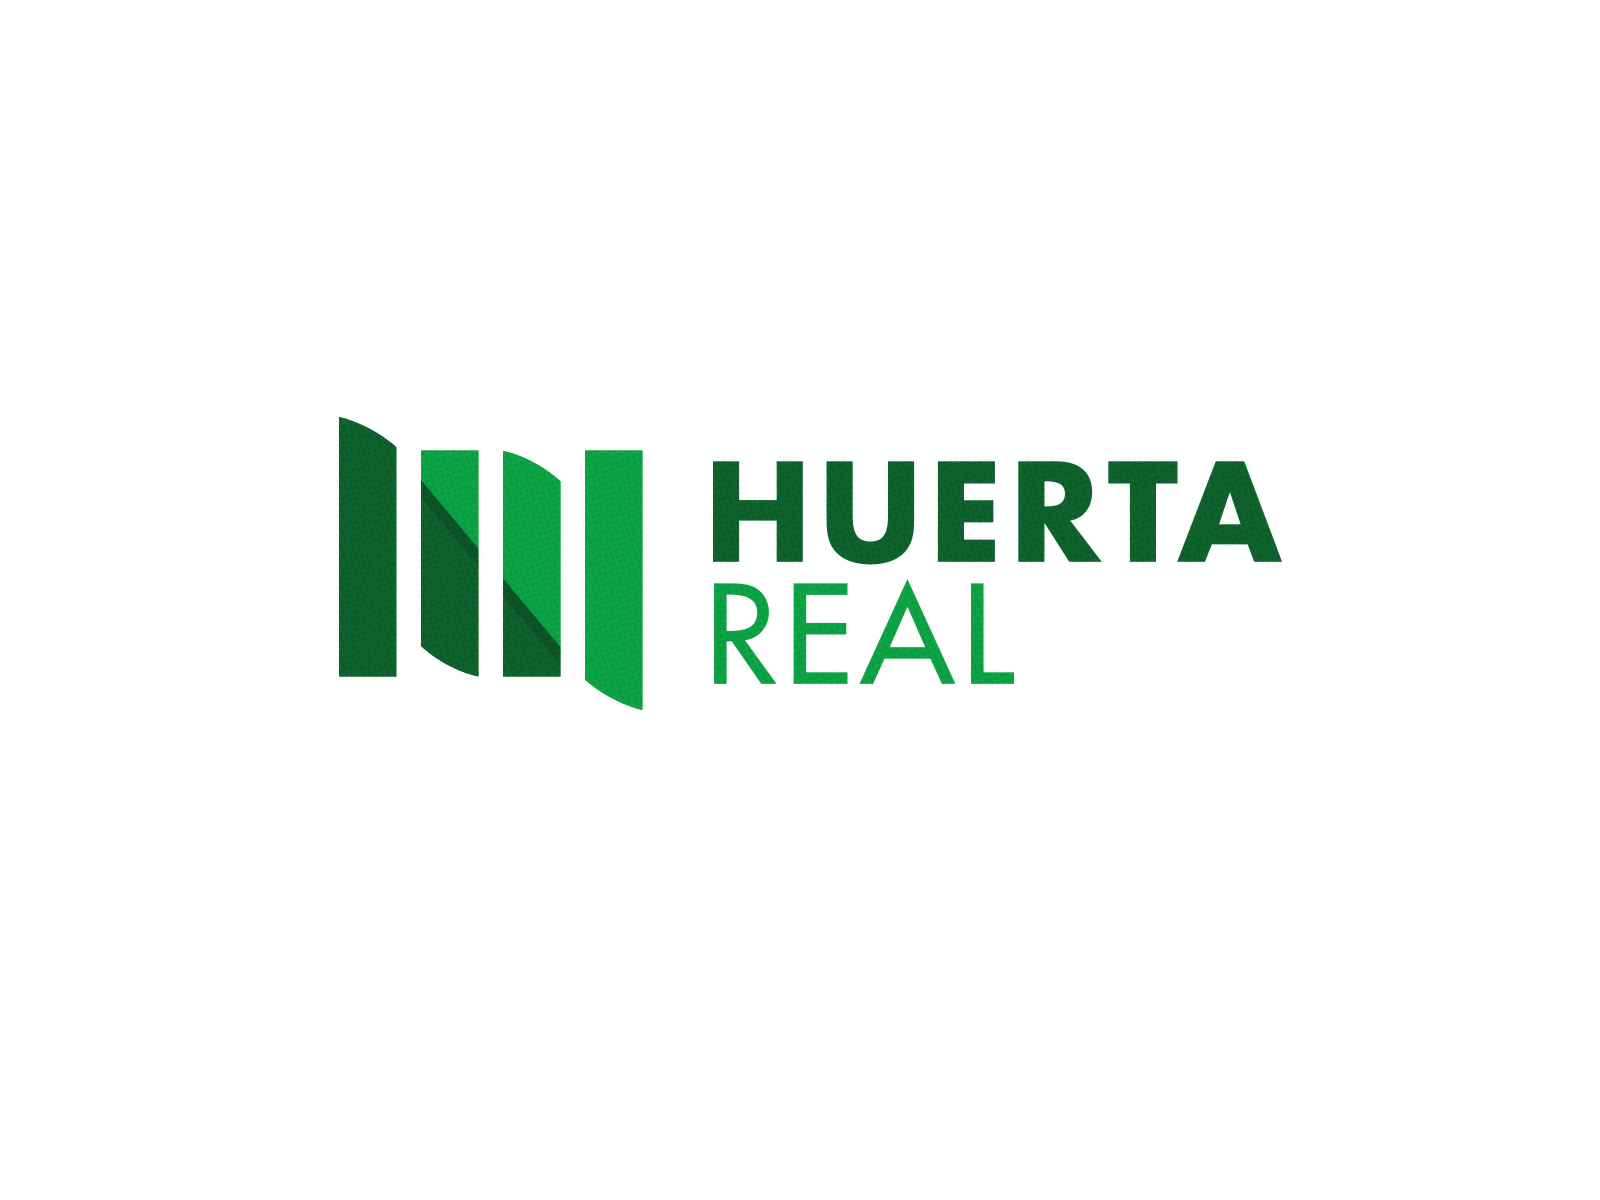 HR brand branding design green logo logo design logos mark mexico real estate